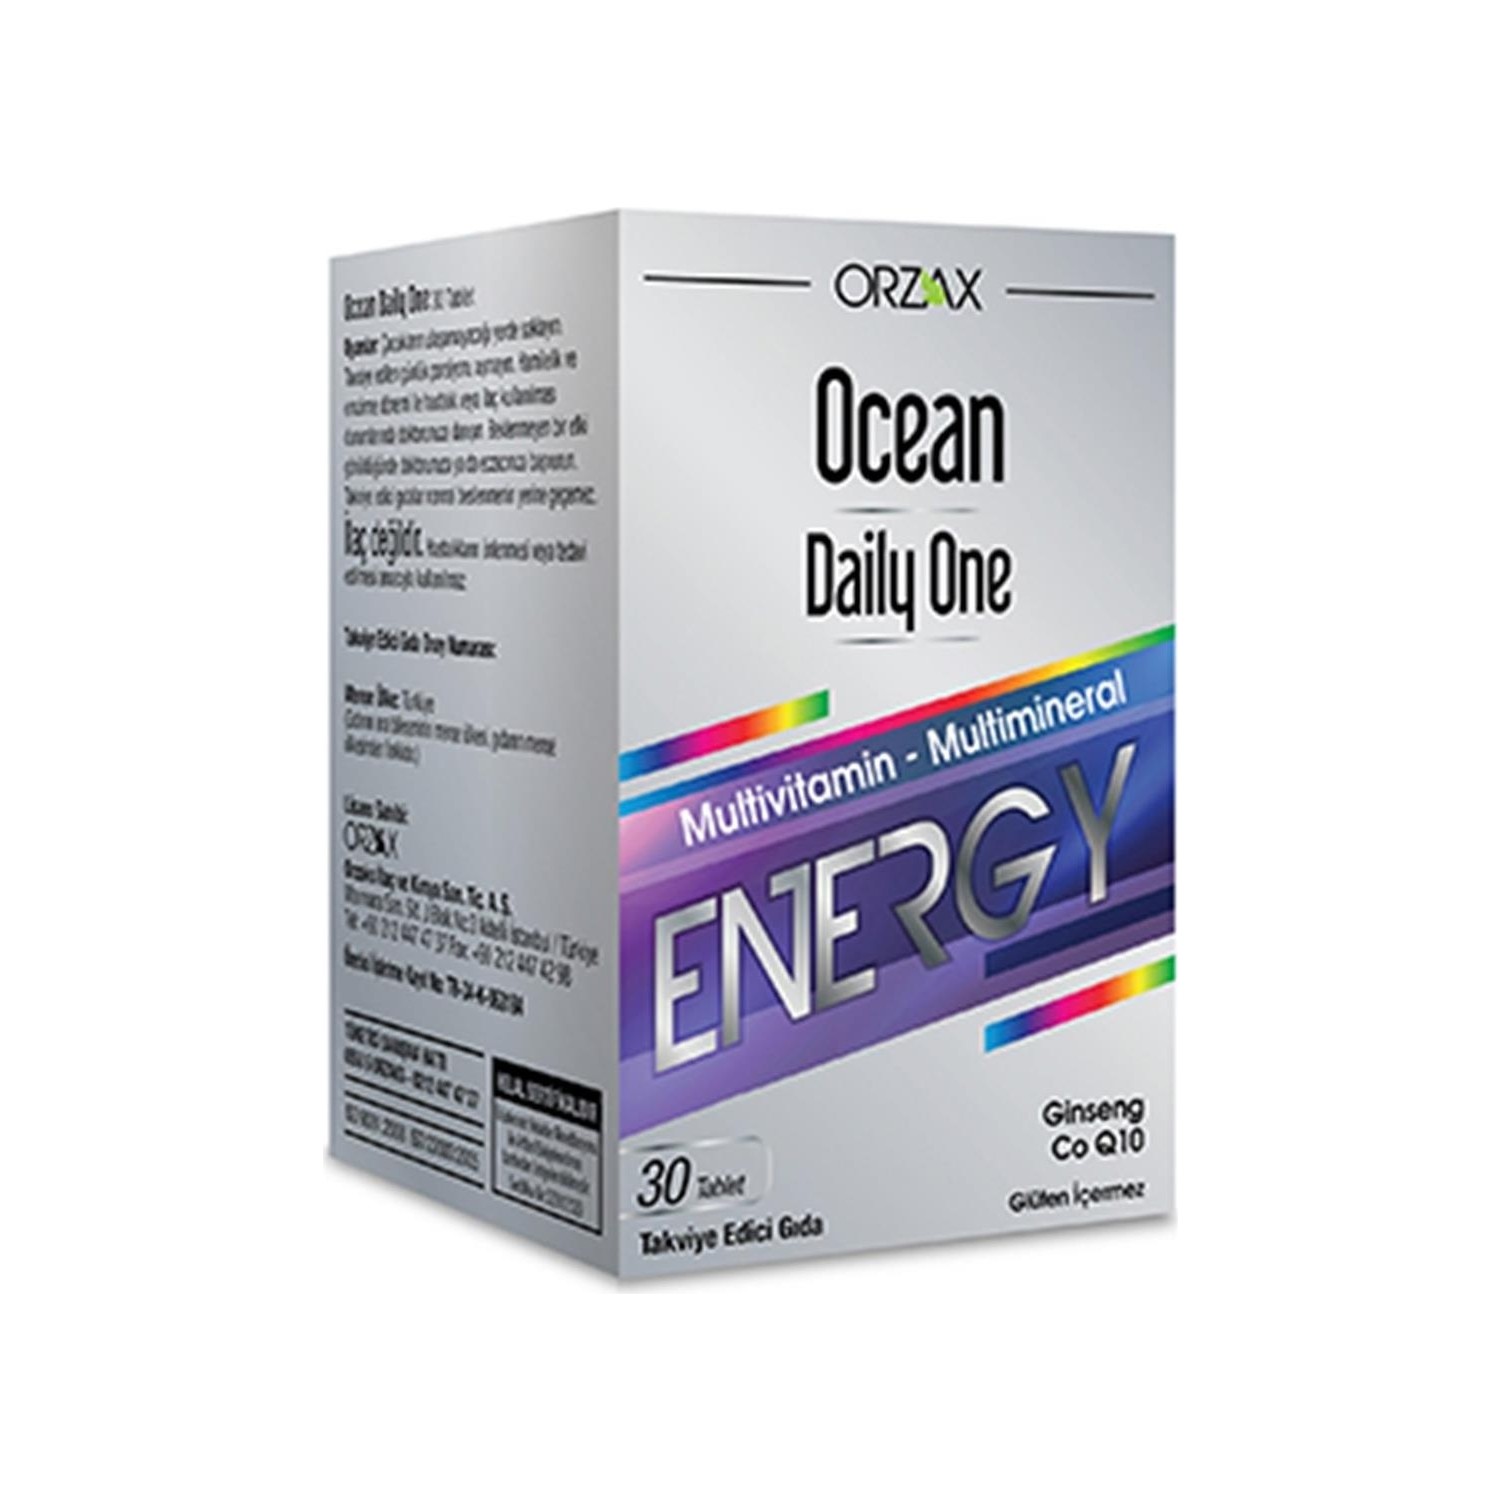 Активная добавка Ocean Daily One Energy, 30 таблеток